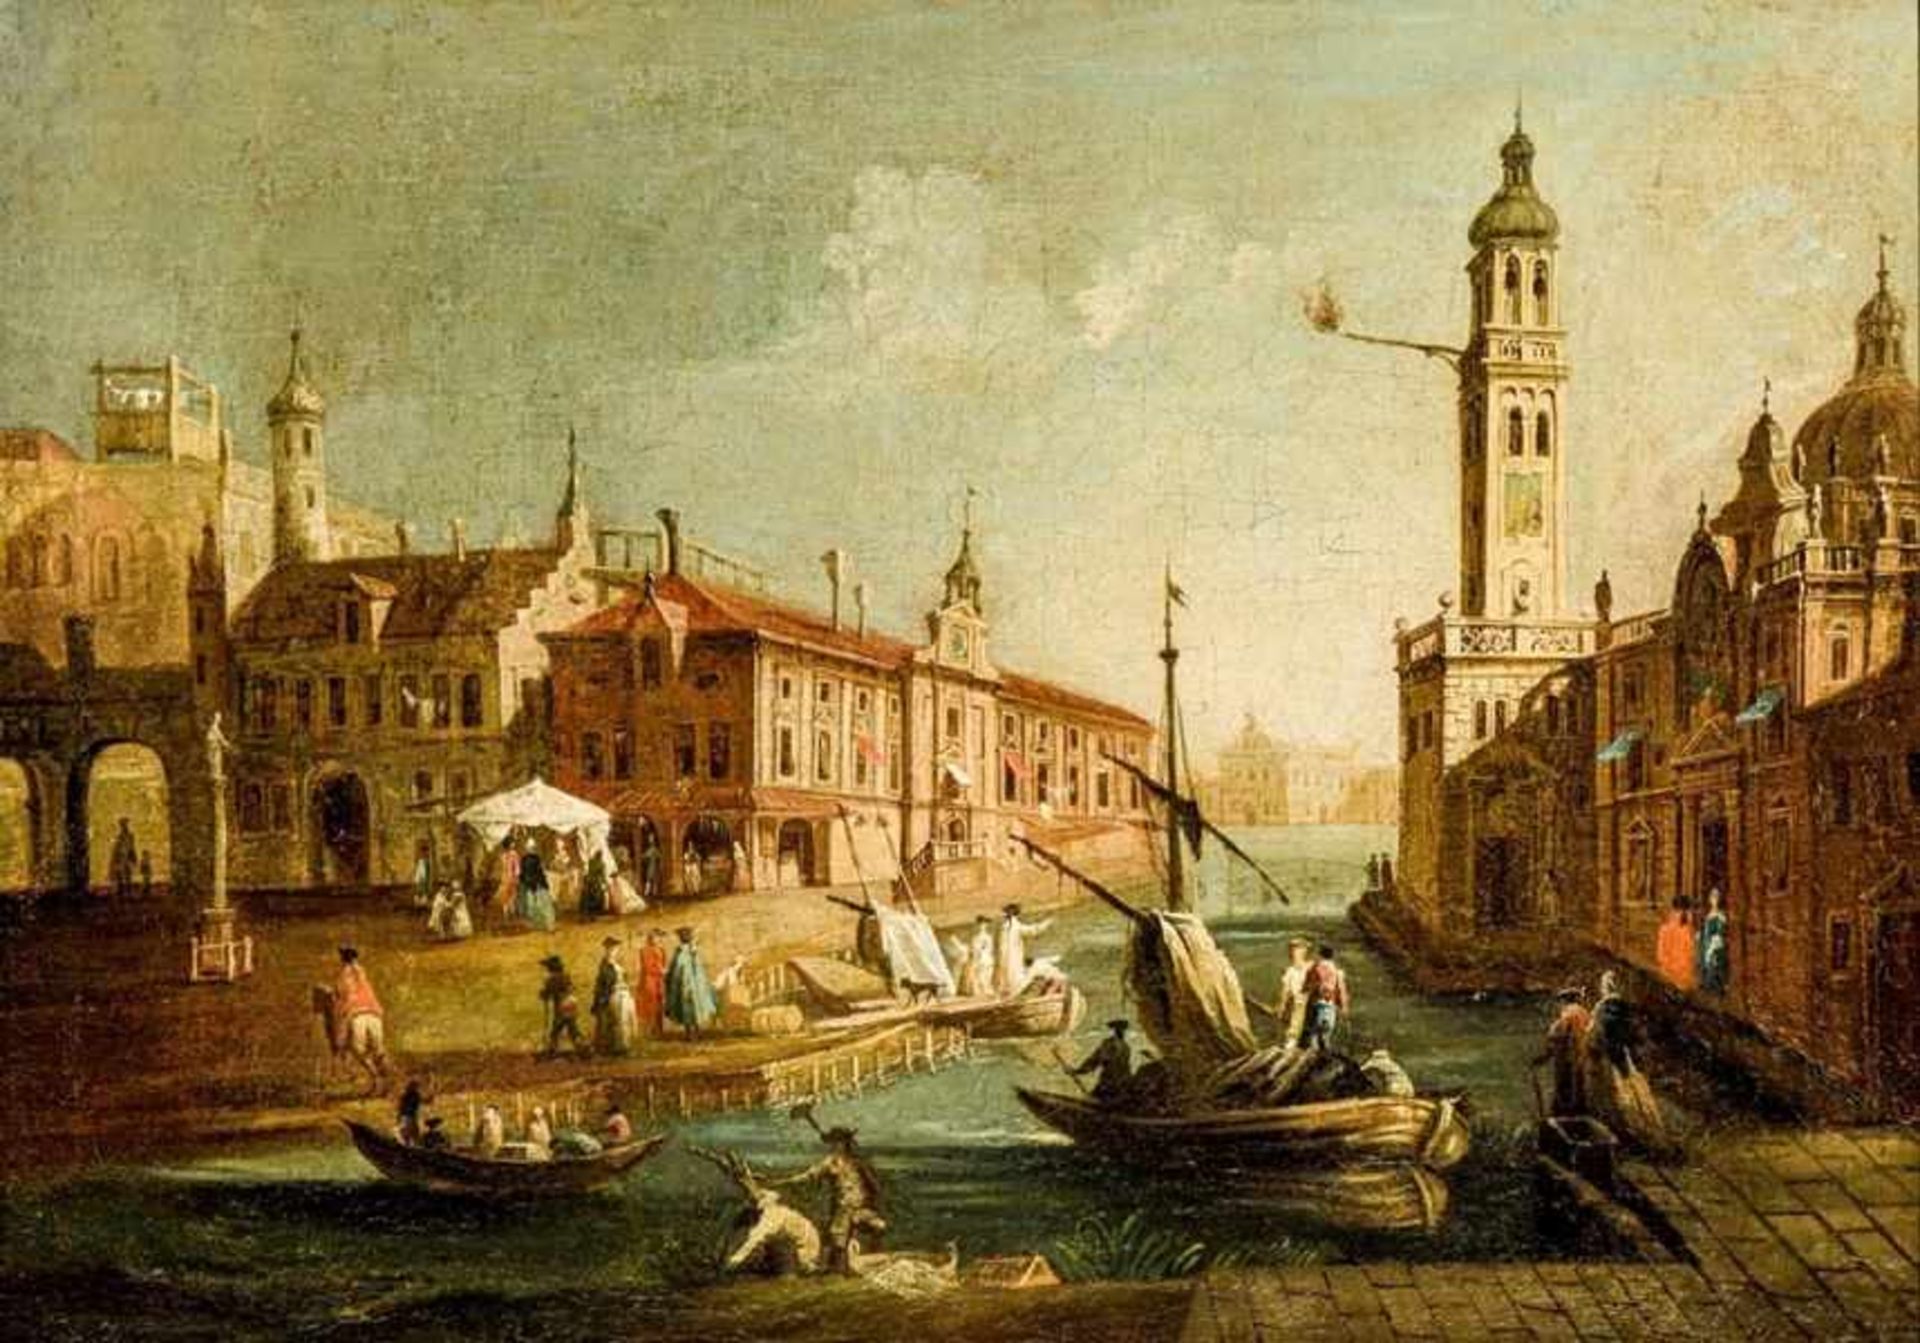 Guardi, Francesco, Umkreis1712-1793, Venedig, lebendige Szenerie mit einigen Personen an einer